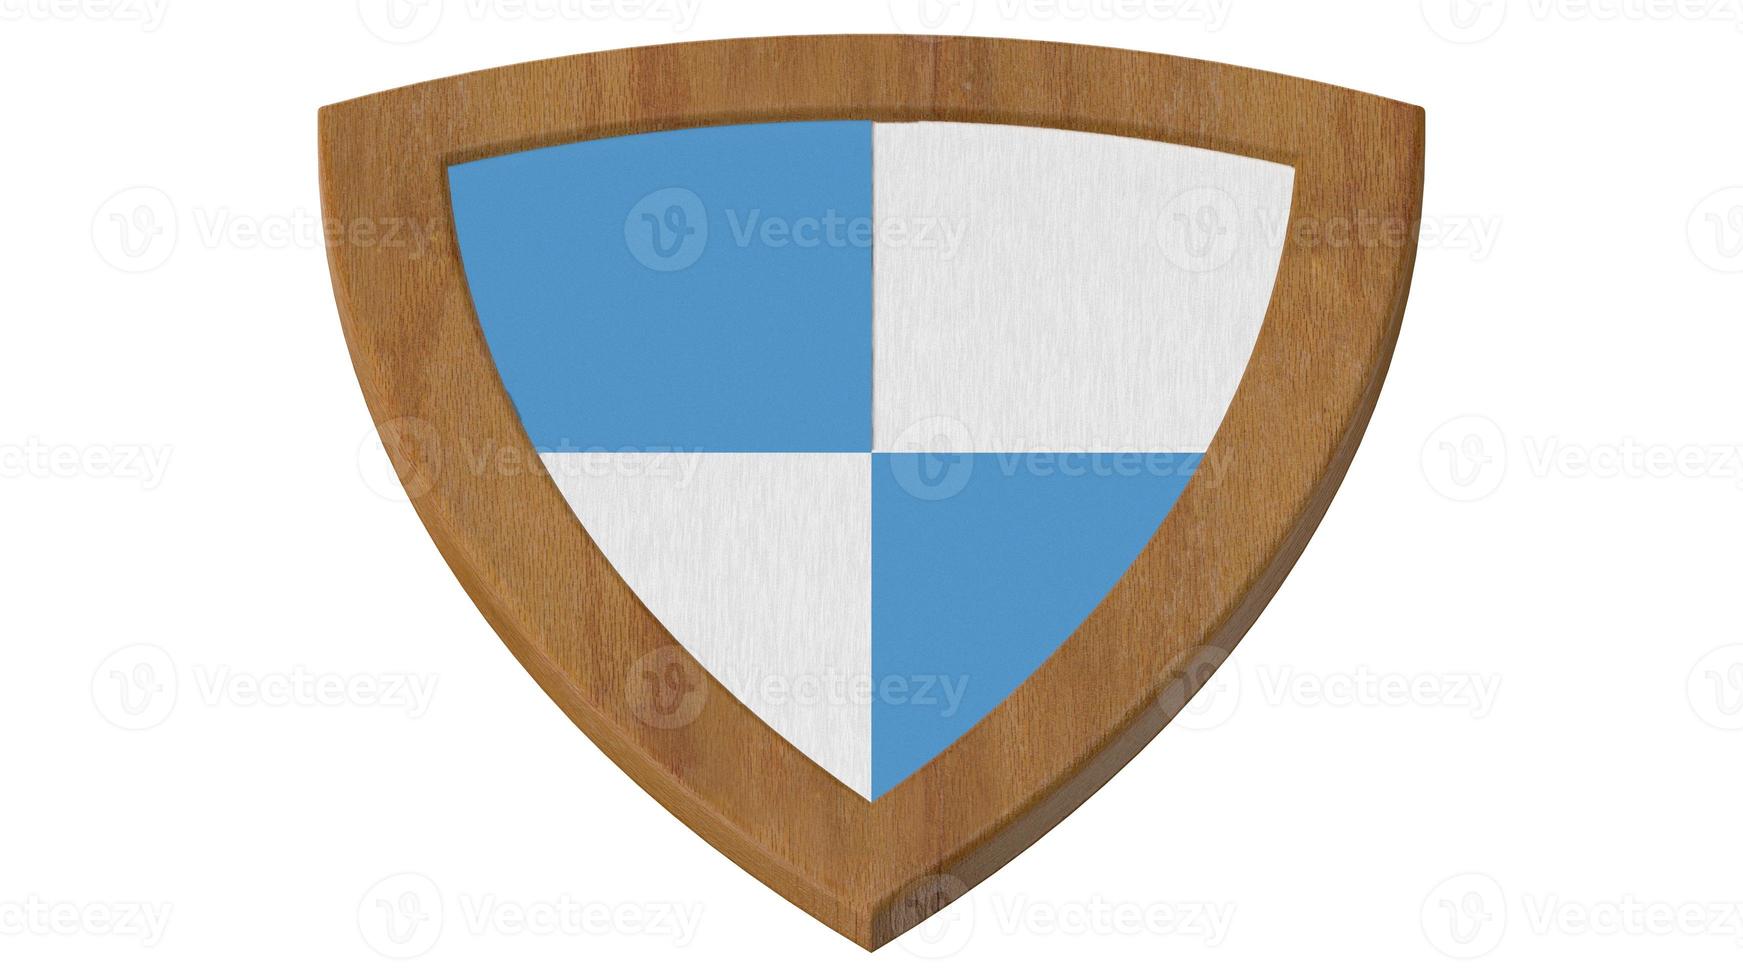 rayas de madera azul y blanco escudo medieval 3d ilustración render foto